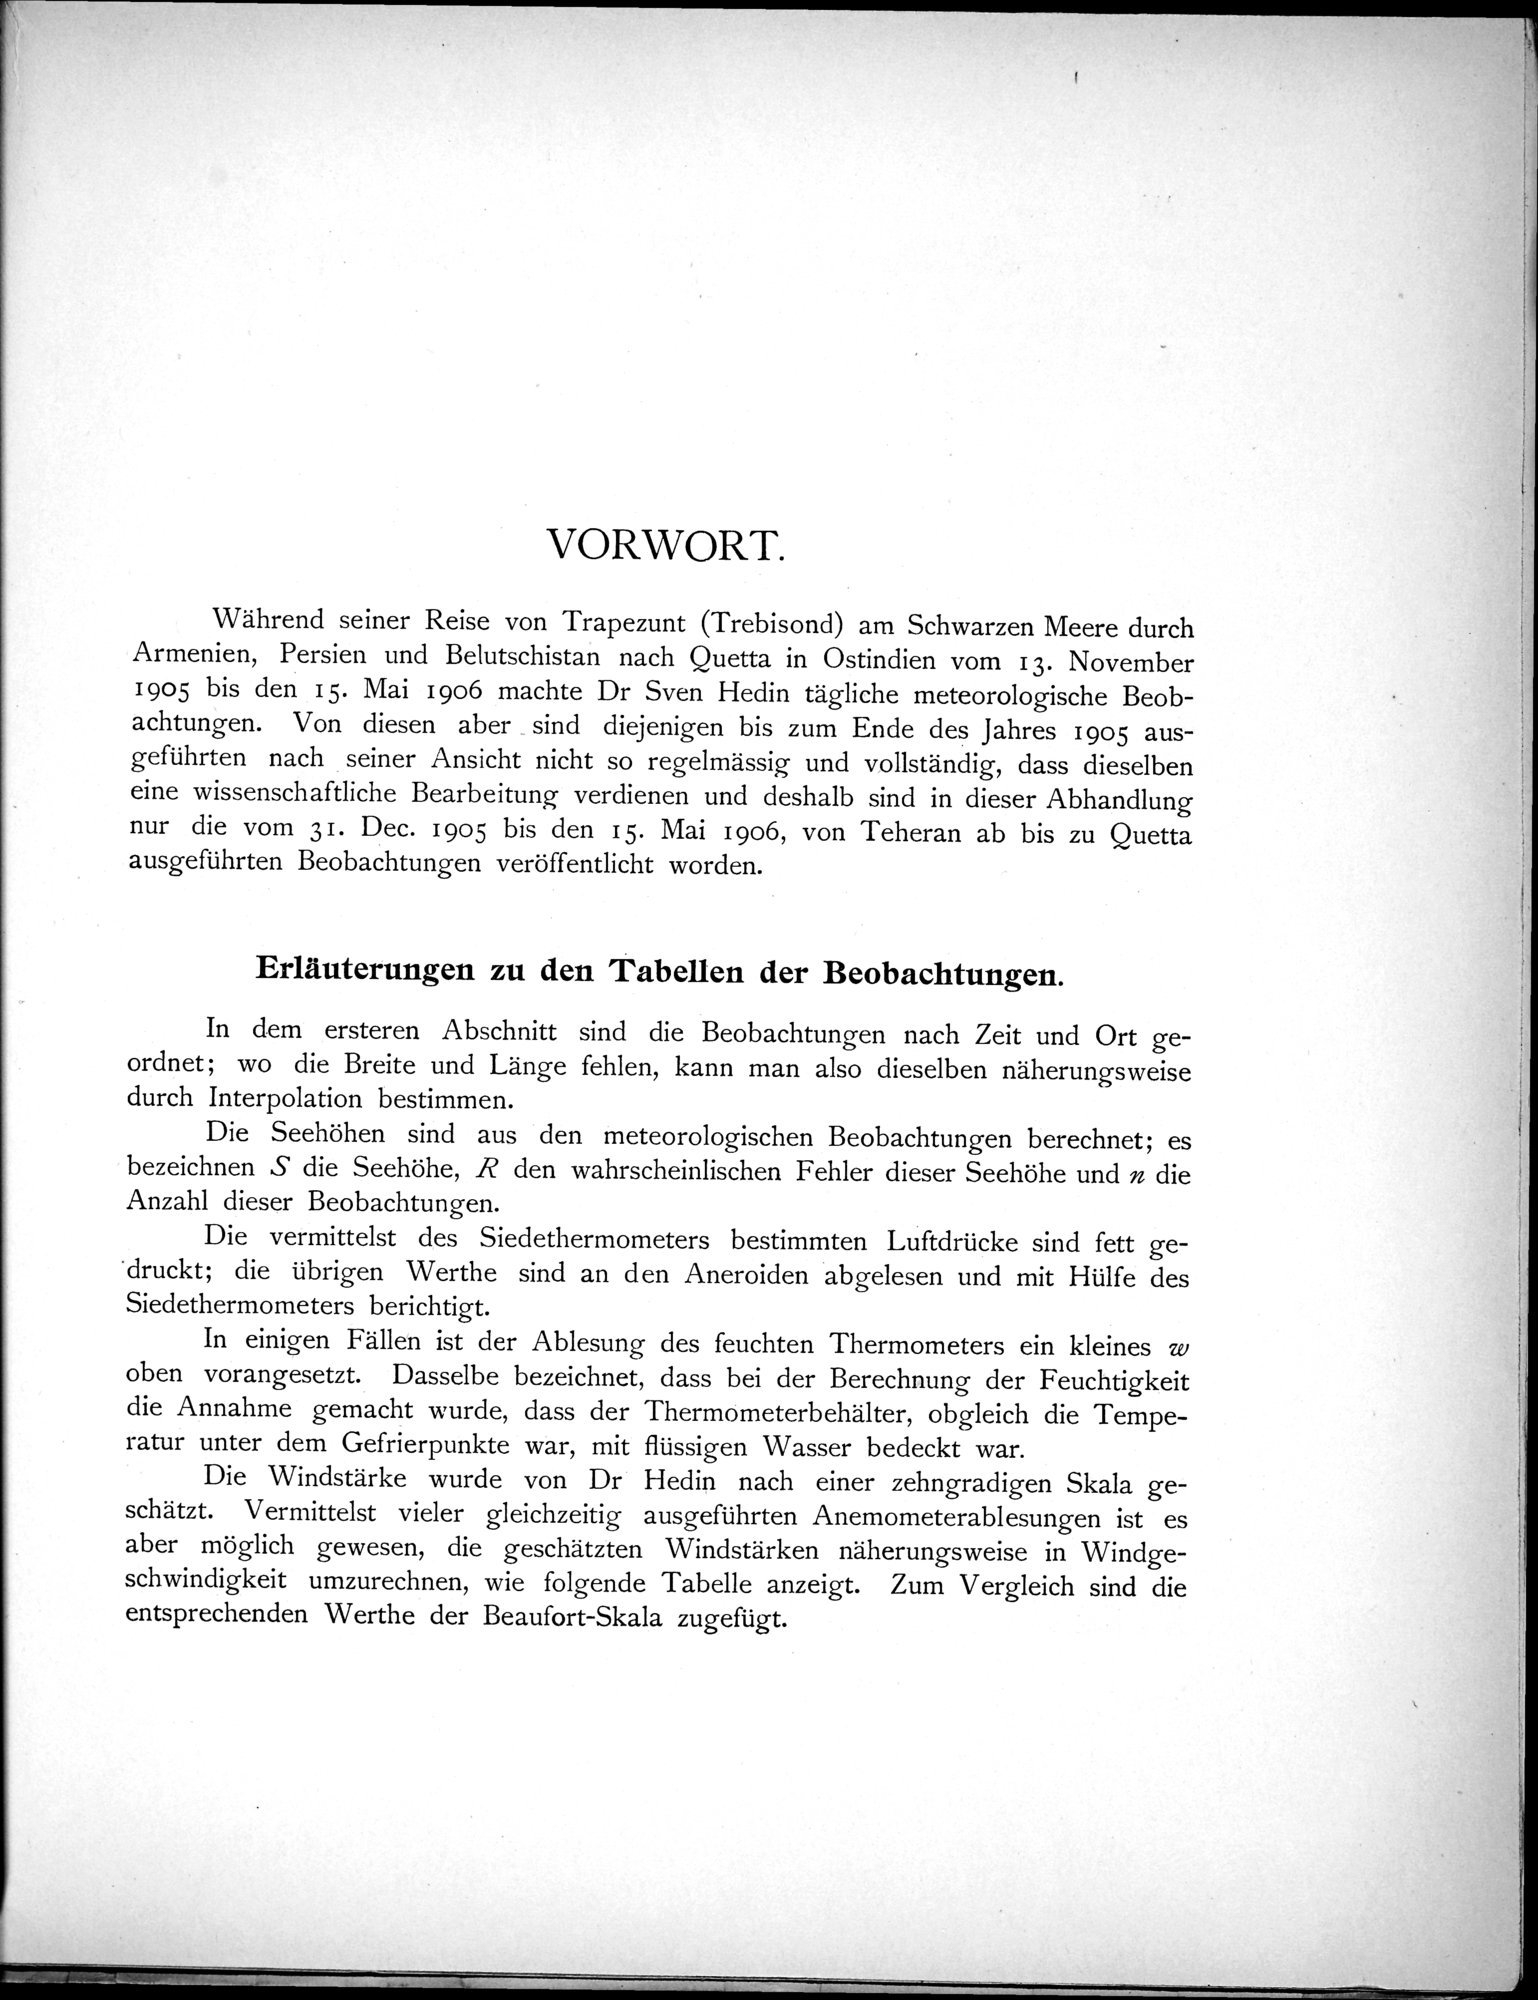 Eine Routenaufnahme durch Ostpersien : vol.1 / Page 297 (Grayscale High Resolution Image)